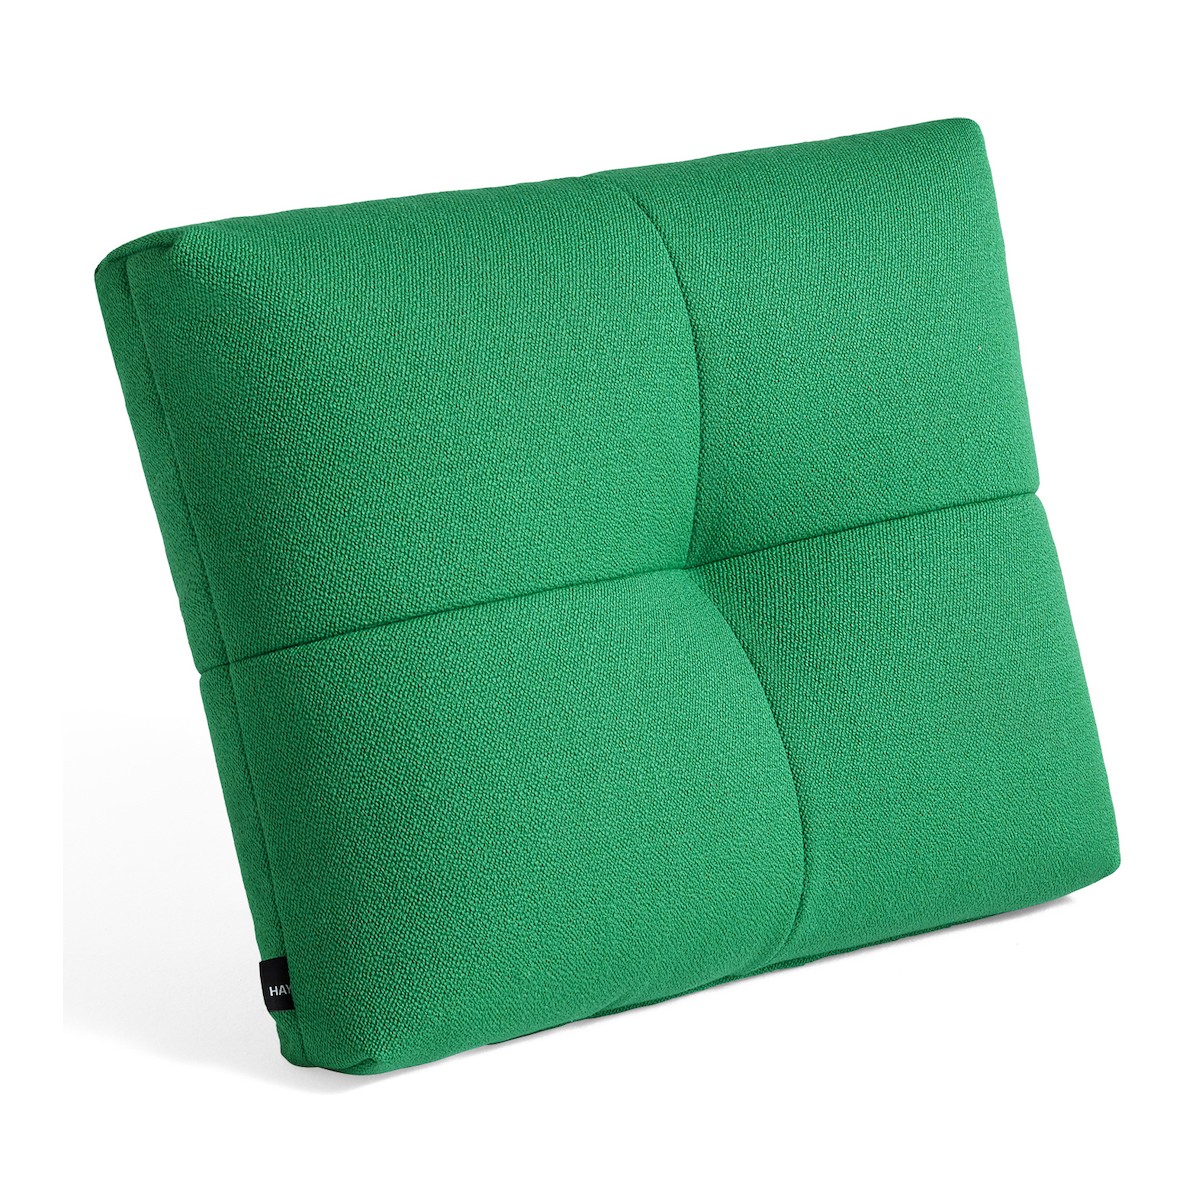 Vidar 932 - Quilton cushion - HAY modular sofa